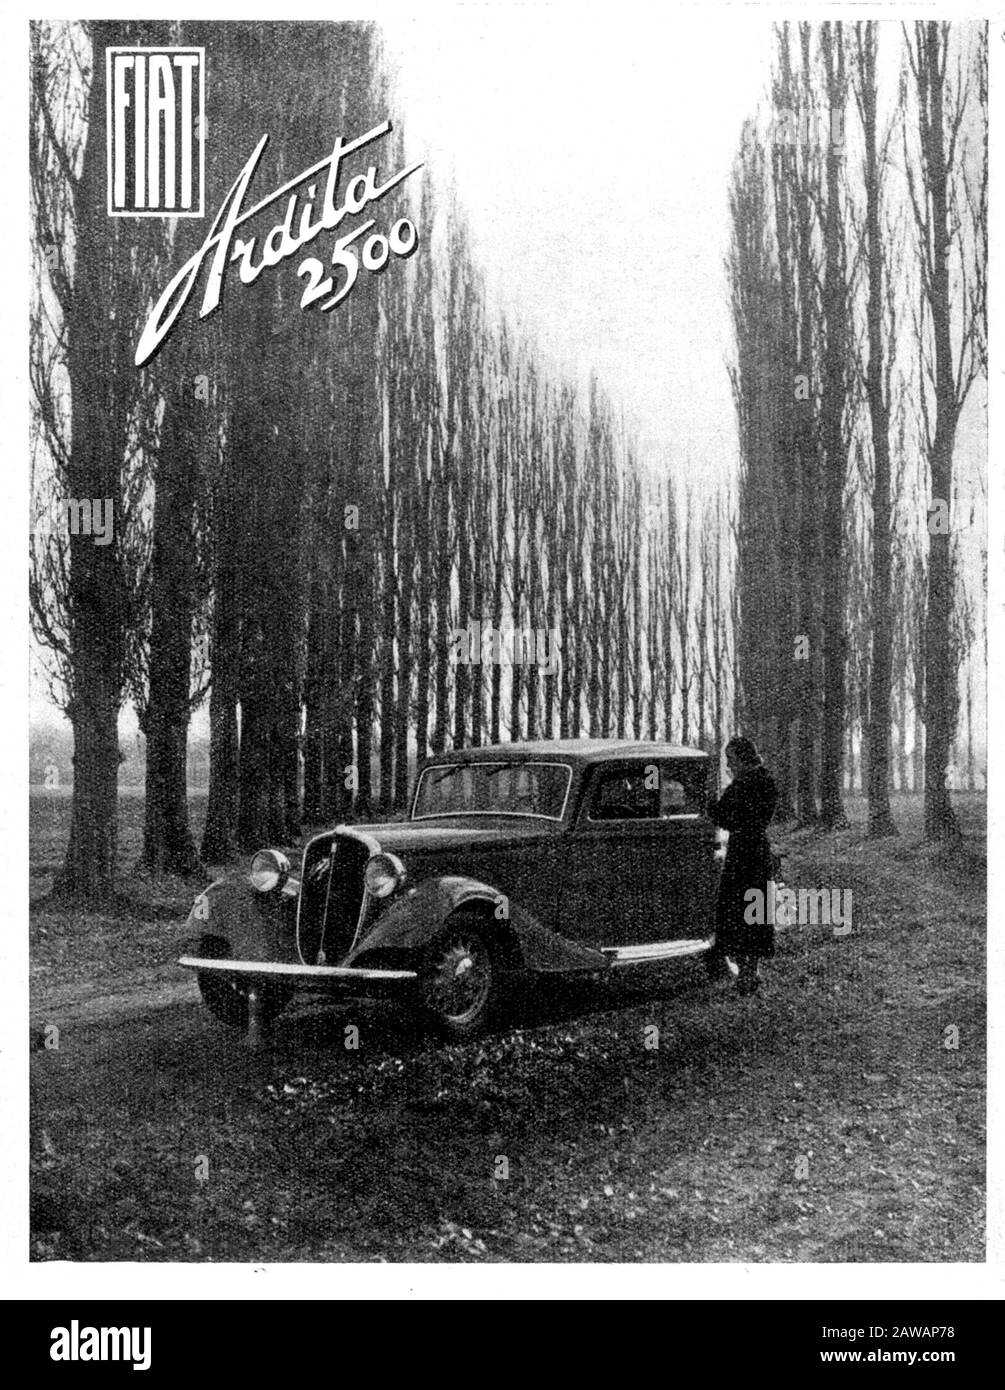 1933 ca , ITALY : The italian car industry FIAT ( F.I.A.T. Fabbrica Italiana Automobili Torino ) advertising for the new model ARDITA 2500 - Tempio de Stock Photo